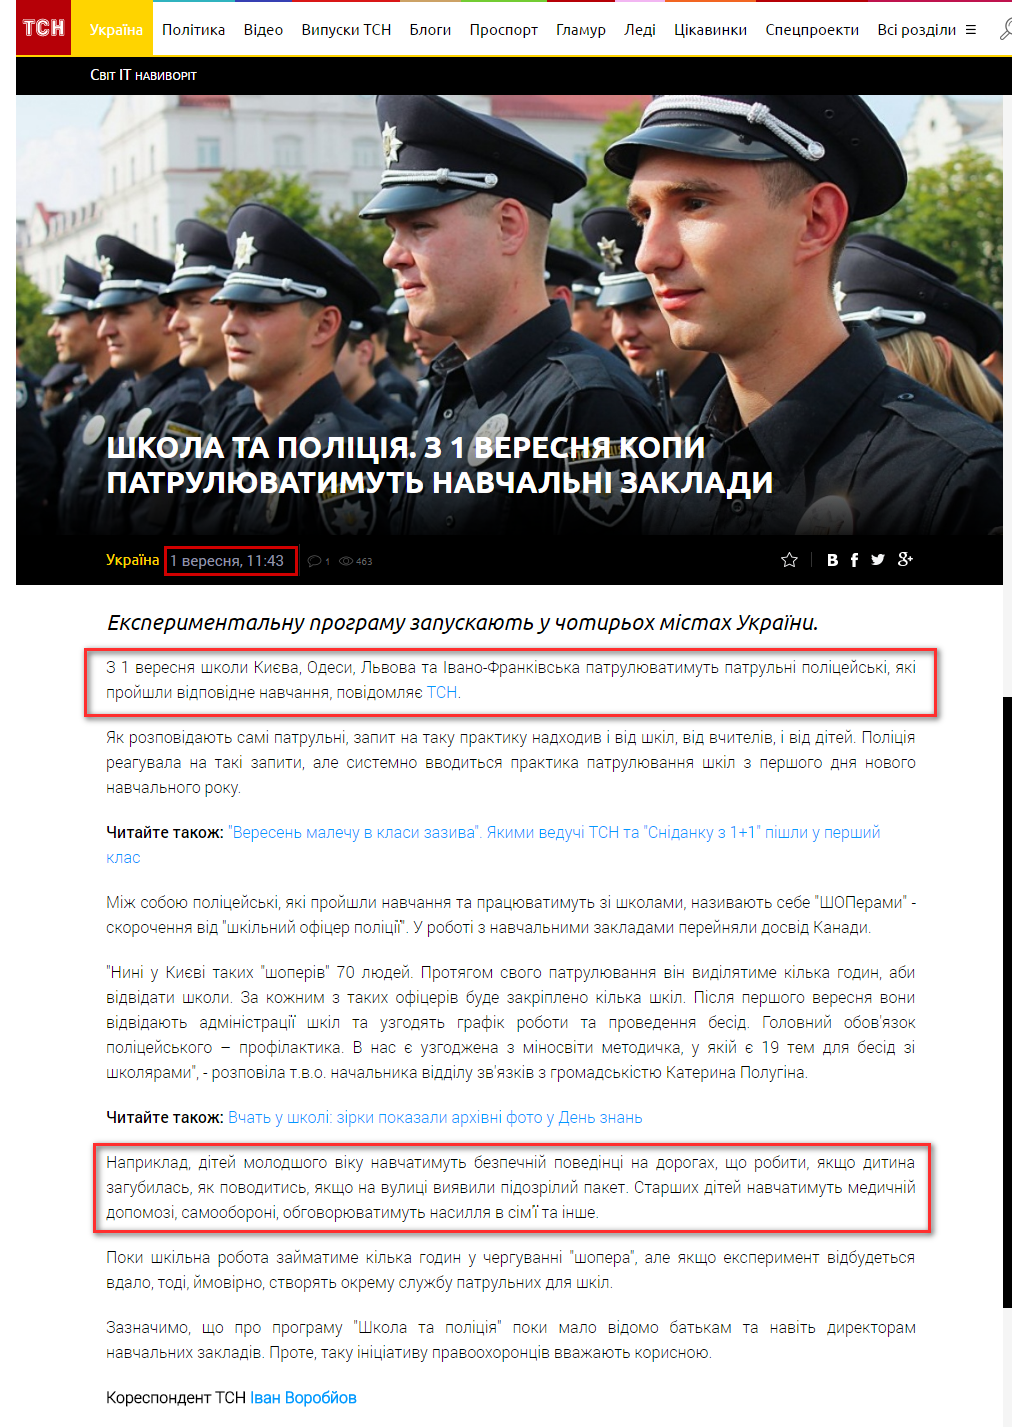 https://tsn.ua/ukrayina/shkola-ta-policiya-z-1-veresnya-kopi-patrulyuvatimut-shkoli-738039.html